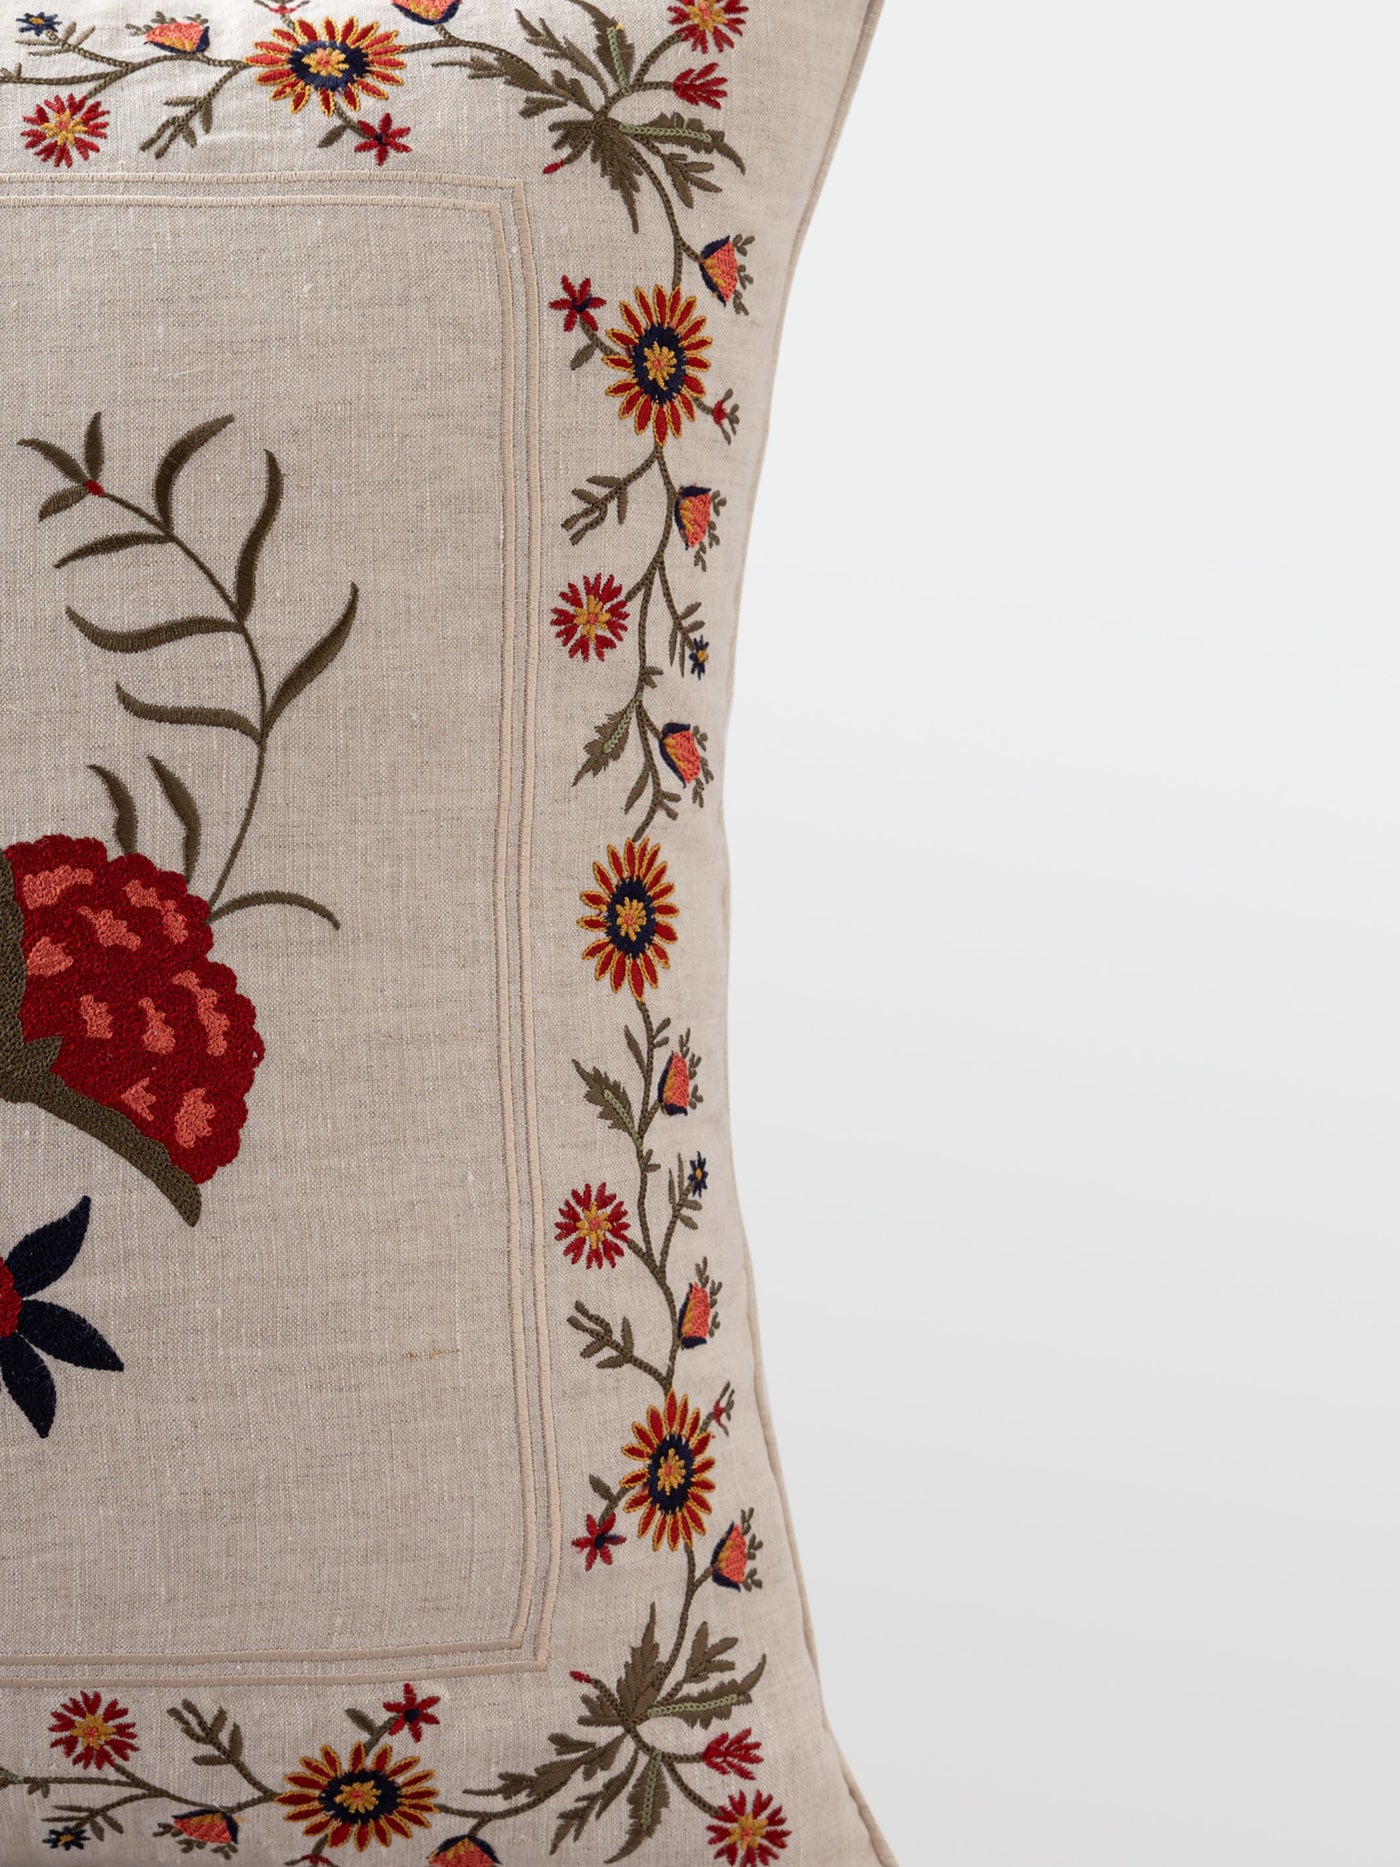 Cushion Cover - Faiza Ivory Embroidered